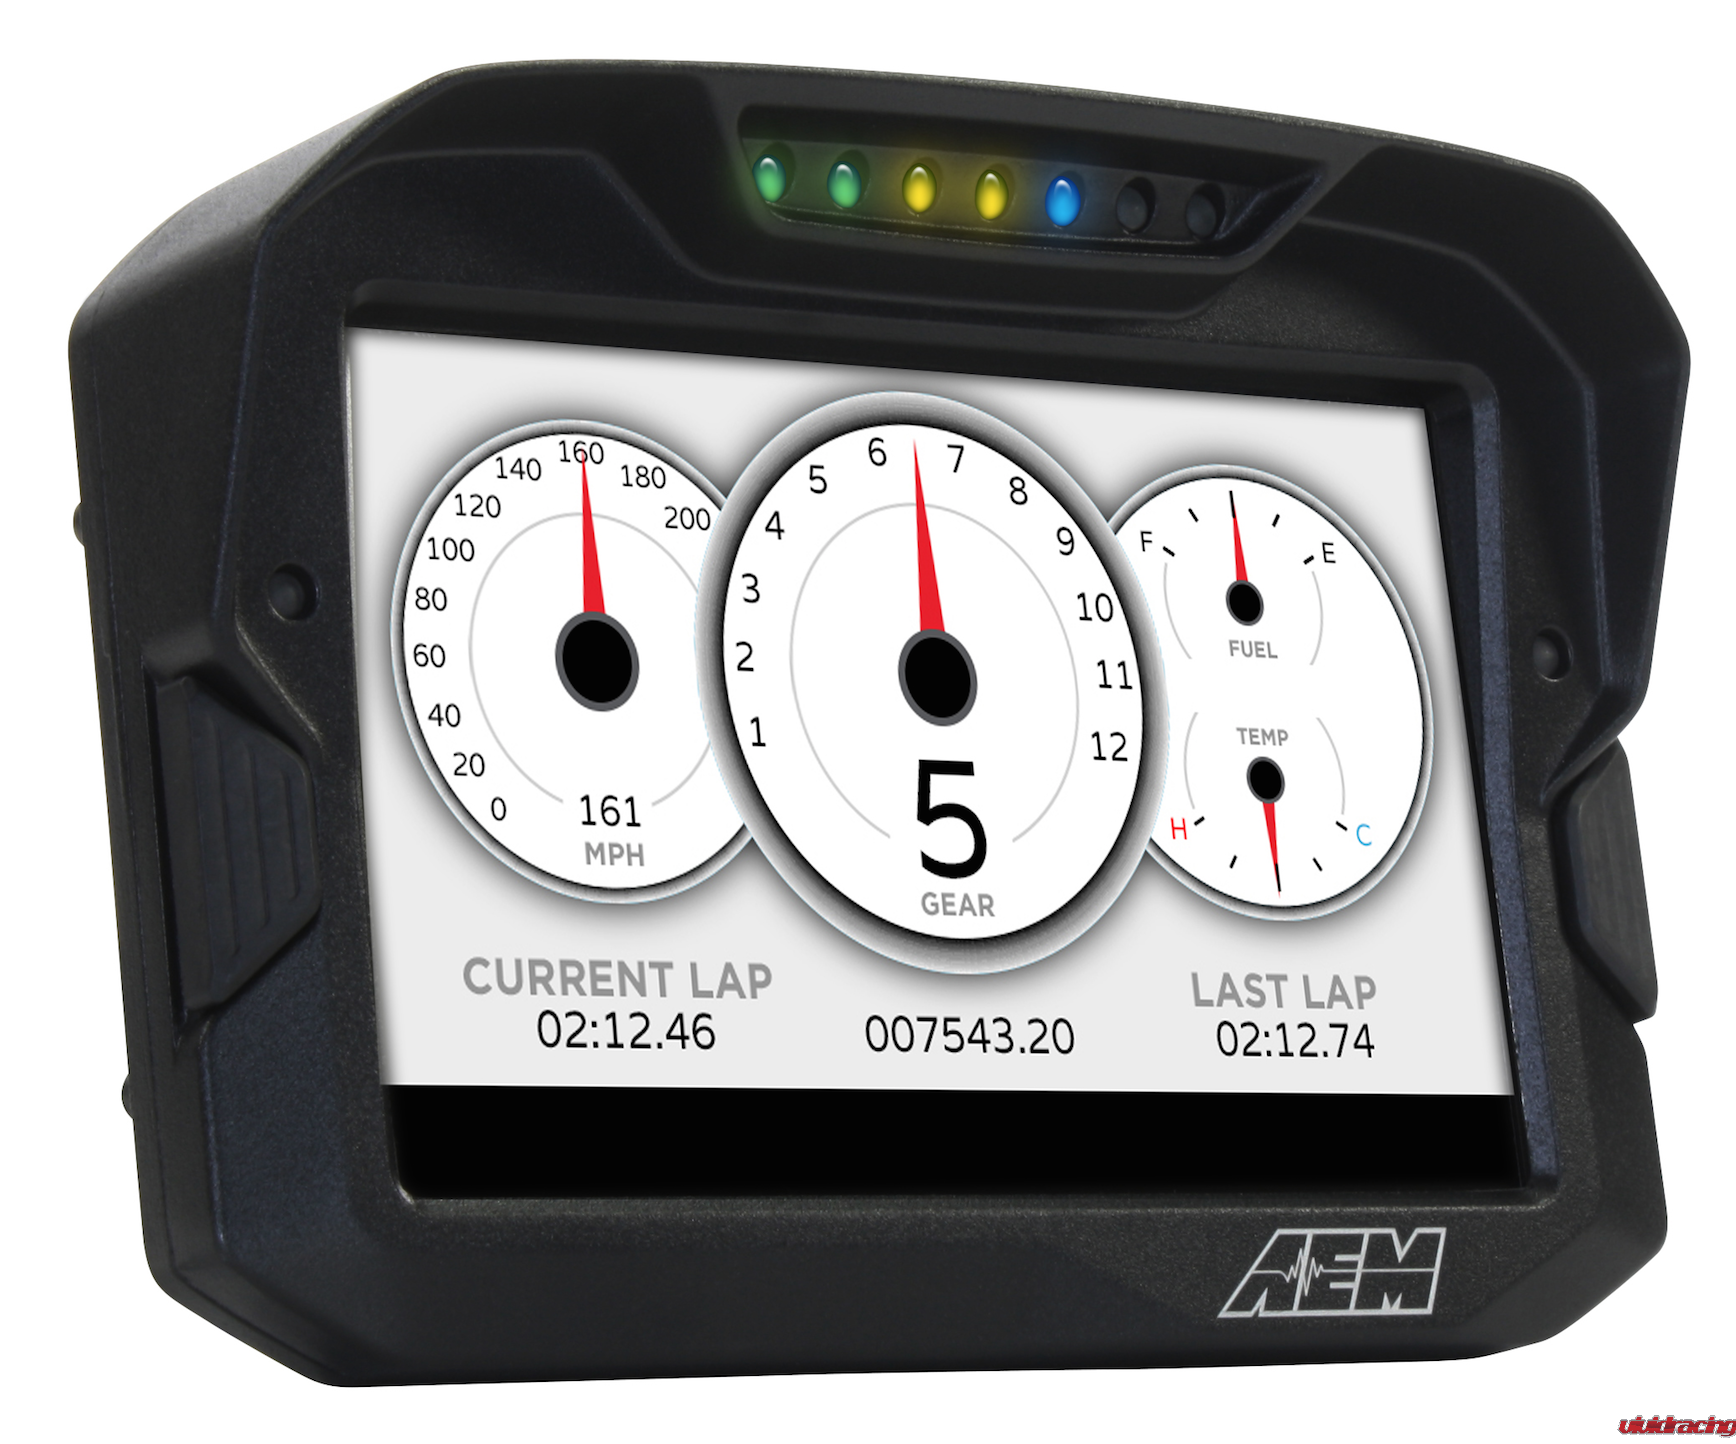 CD-7 , CD-7L, 7” Full Color Digital Dash Displays, LED, gauges